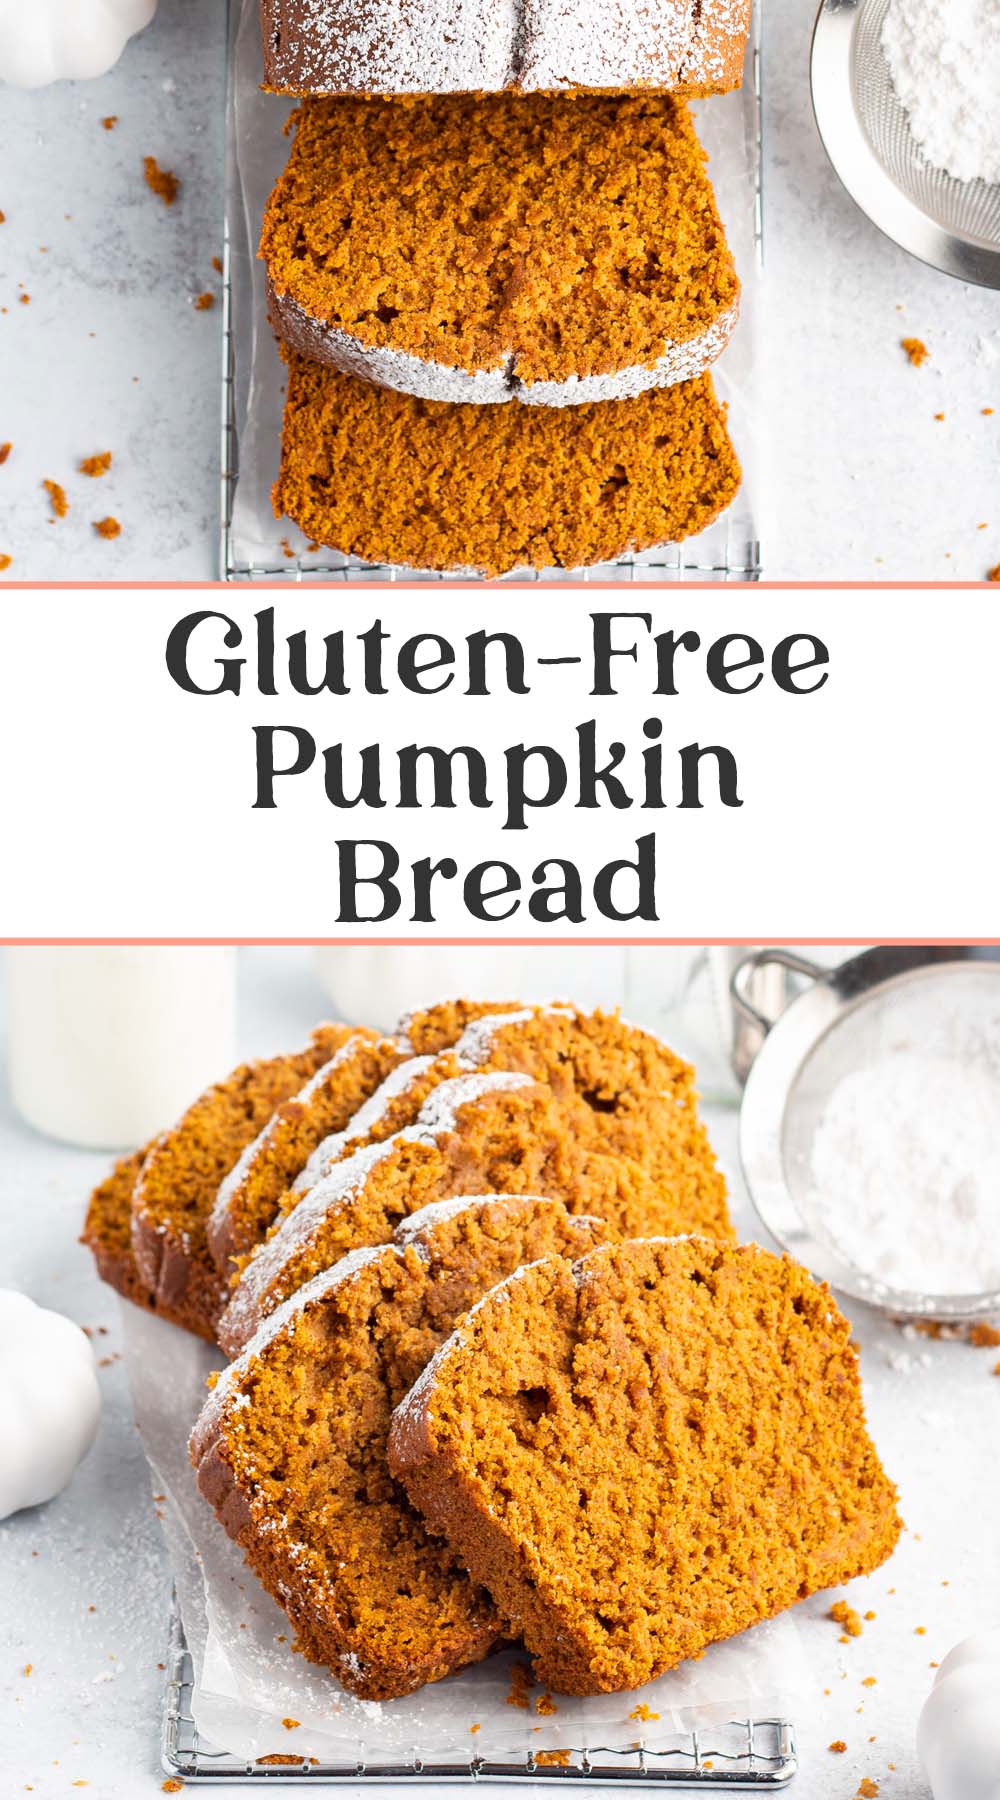 Pin graphic for gluten free pumpkin bread.